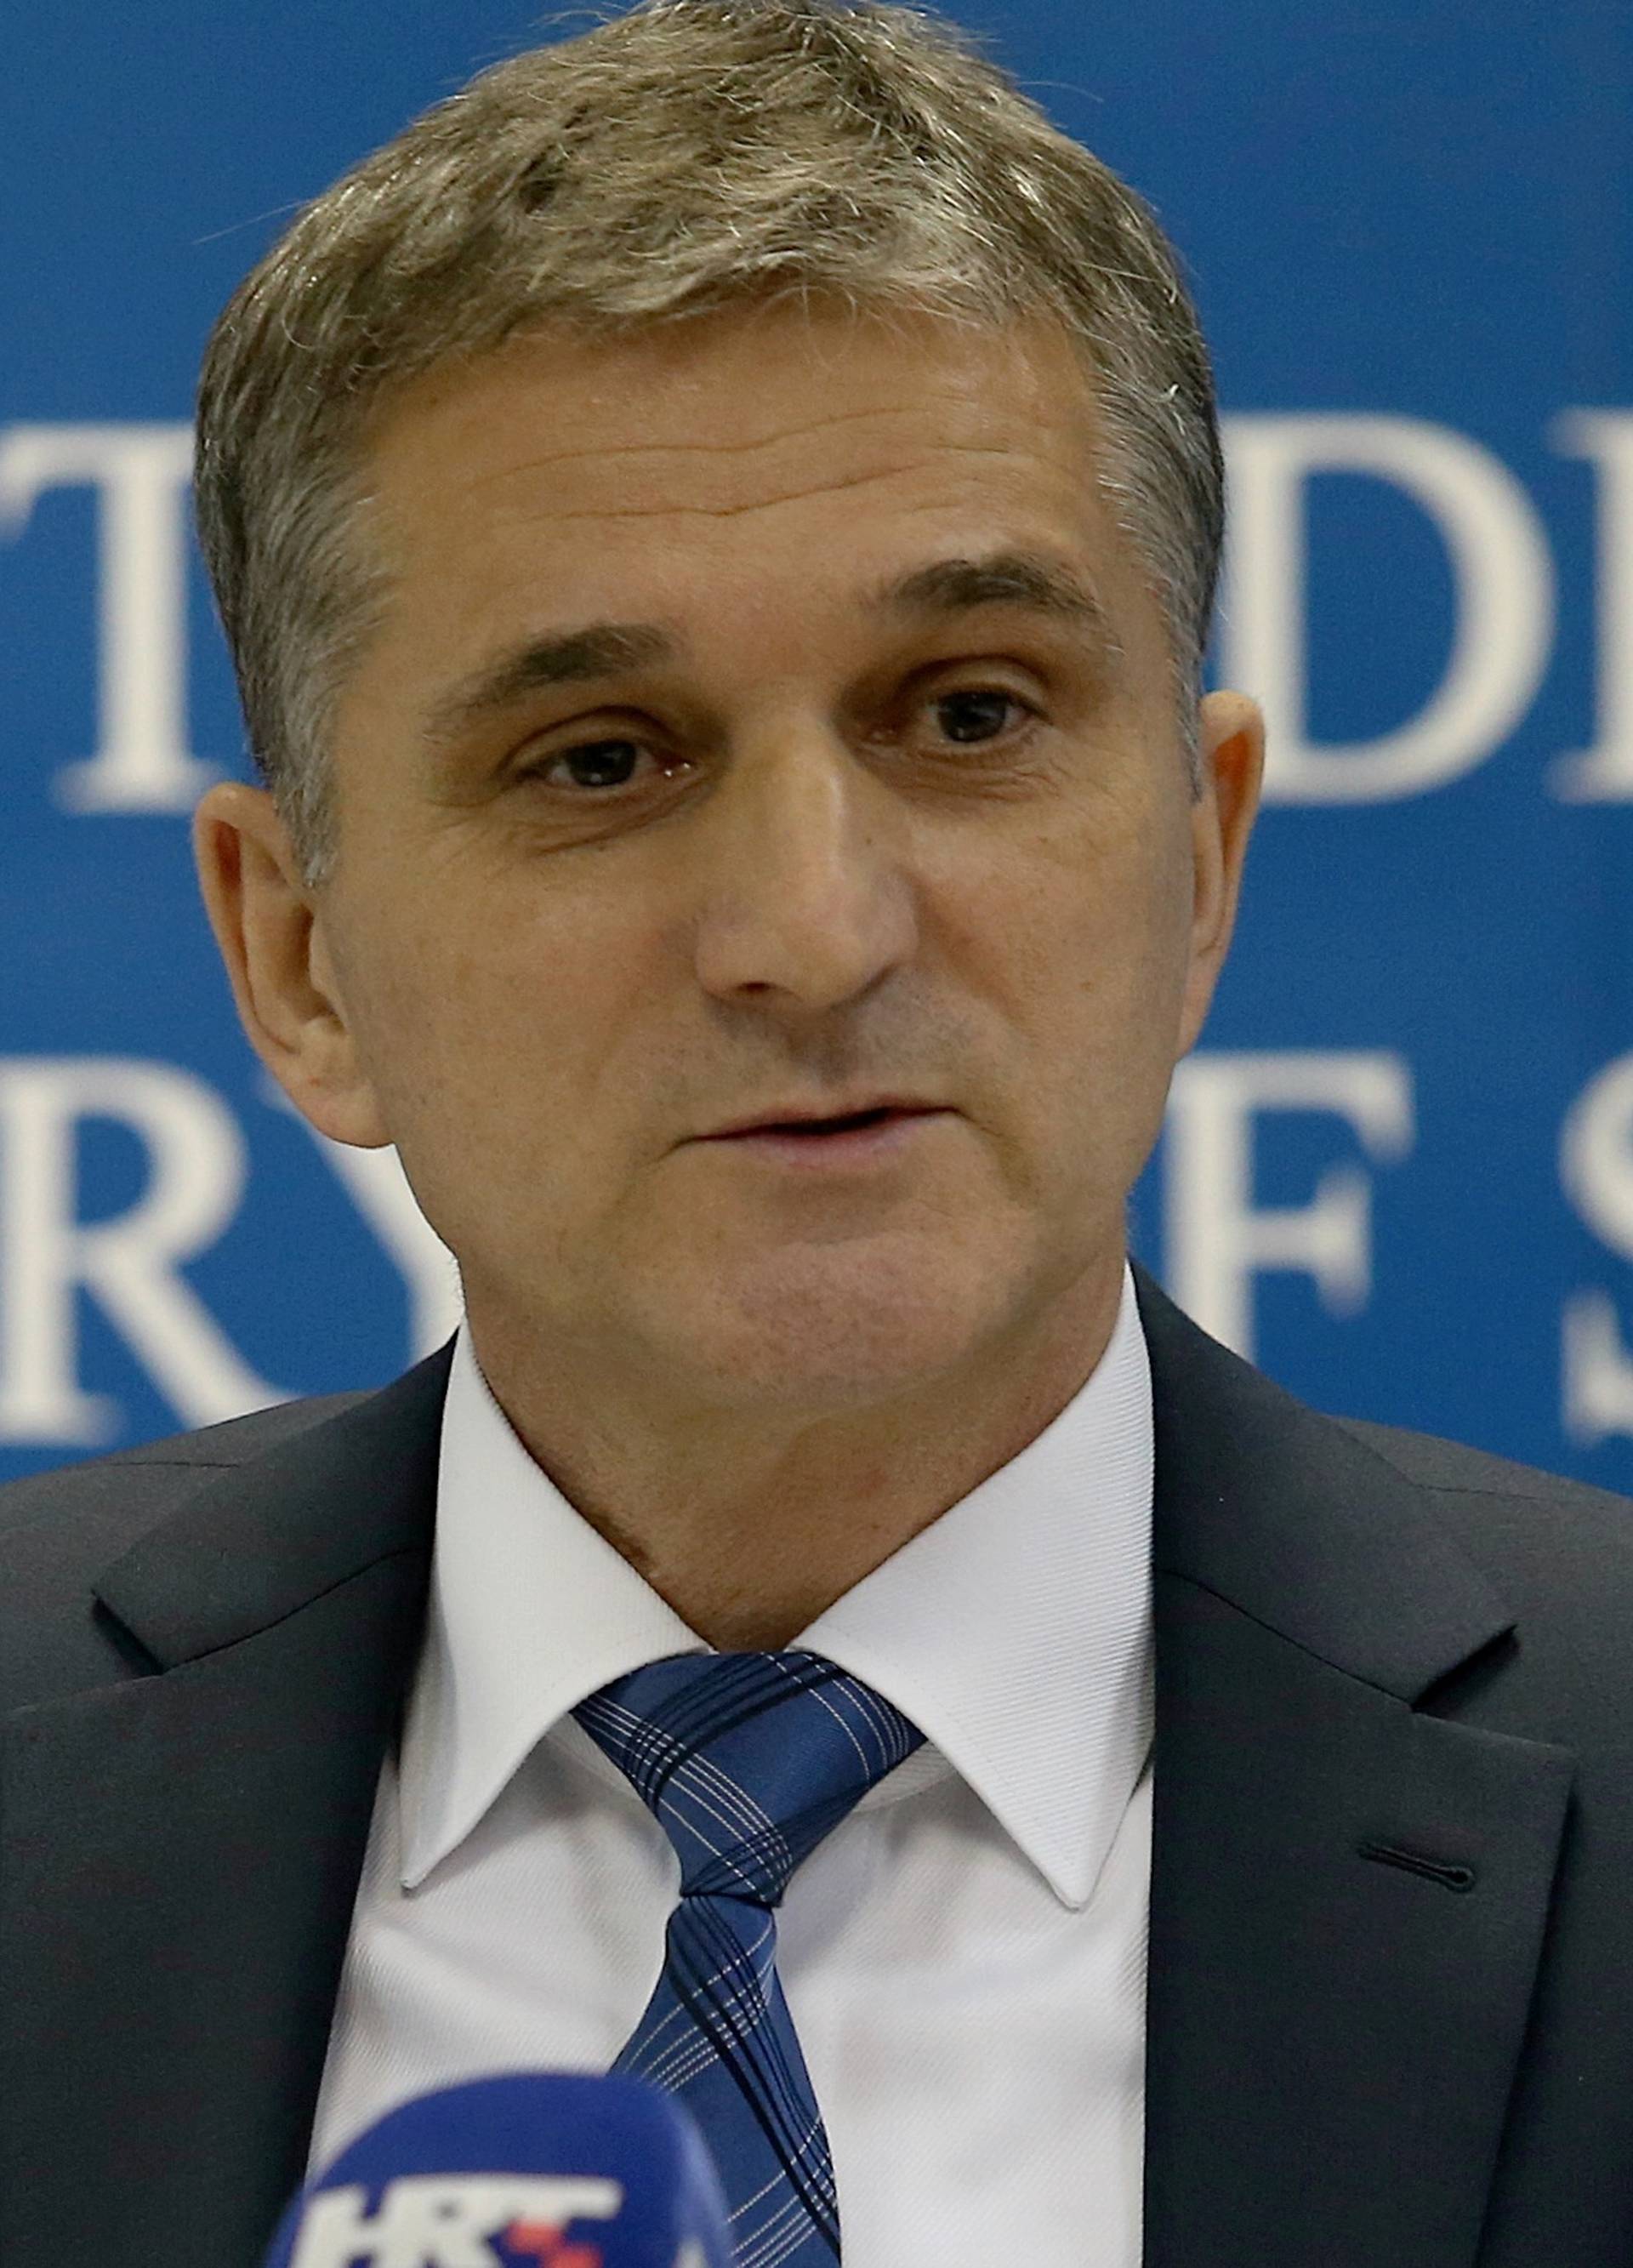 Brat ministra Marića dao je ostavku zbog 'medijskog linča'